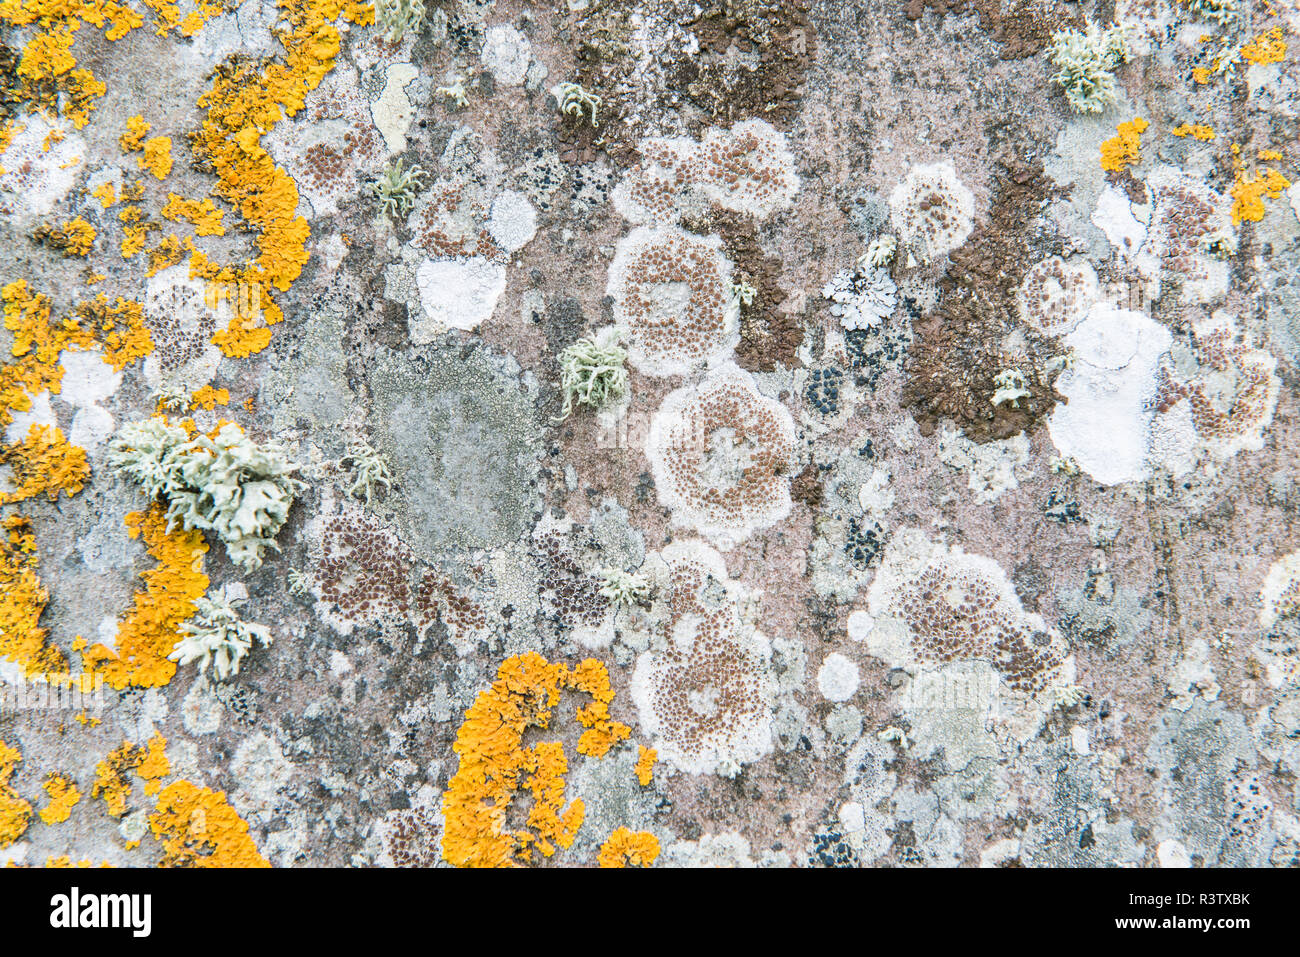 Le Royaume-Uni, l'Écosse, l'île d'Orkney, anneau de Shetlands, détail de lichens poussant sur une pierre érigée entre 2000 et 2500 BC. Banque D'Images